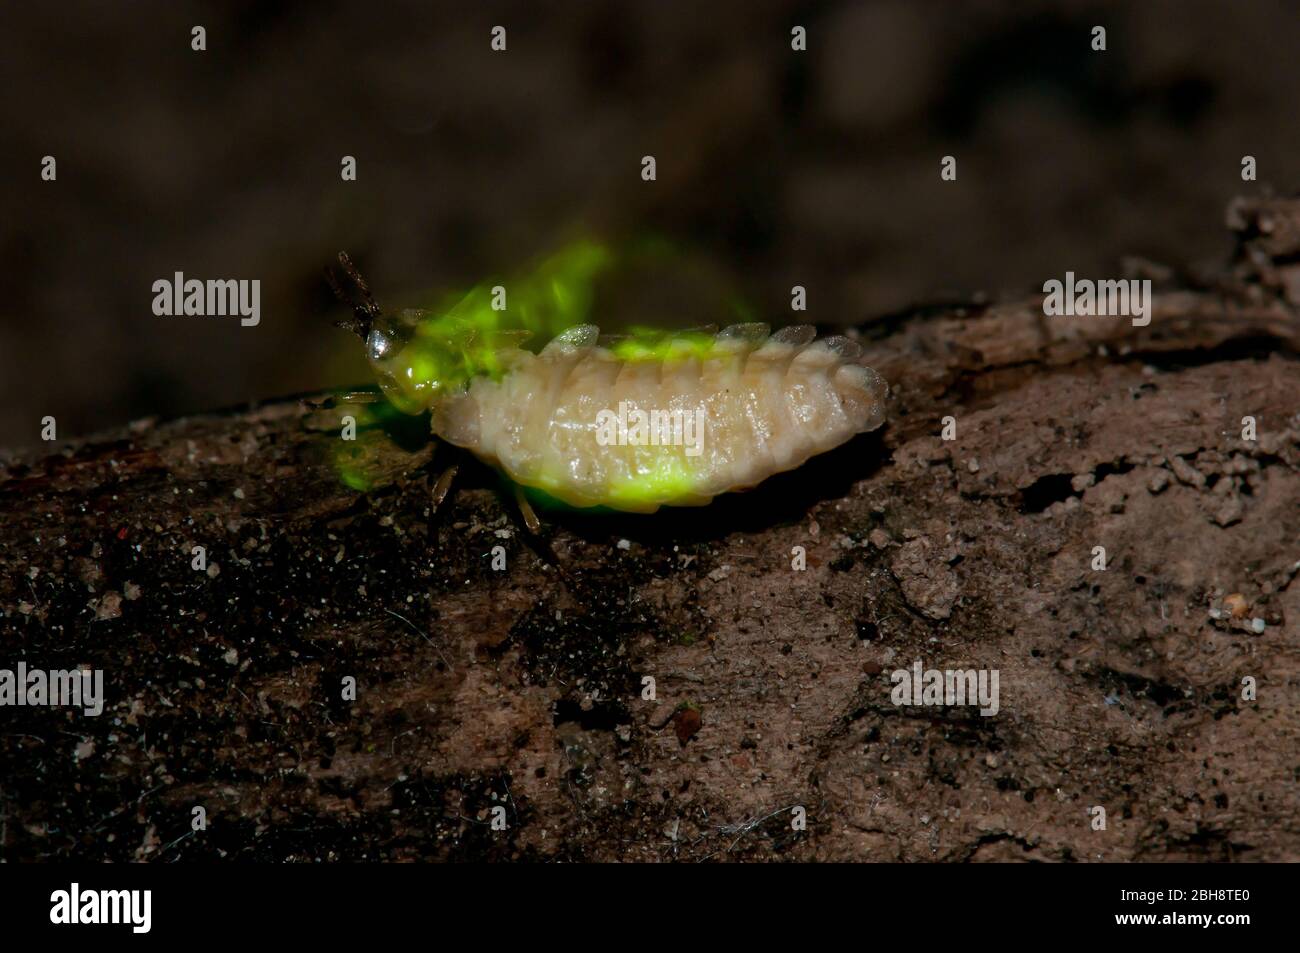 Firefly, Lampyridae, mit beleuchteten Lichtregeln, Bayern, Deutschland Stockfoto